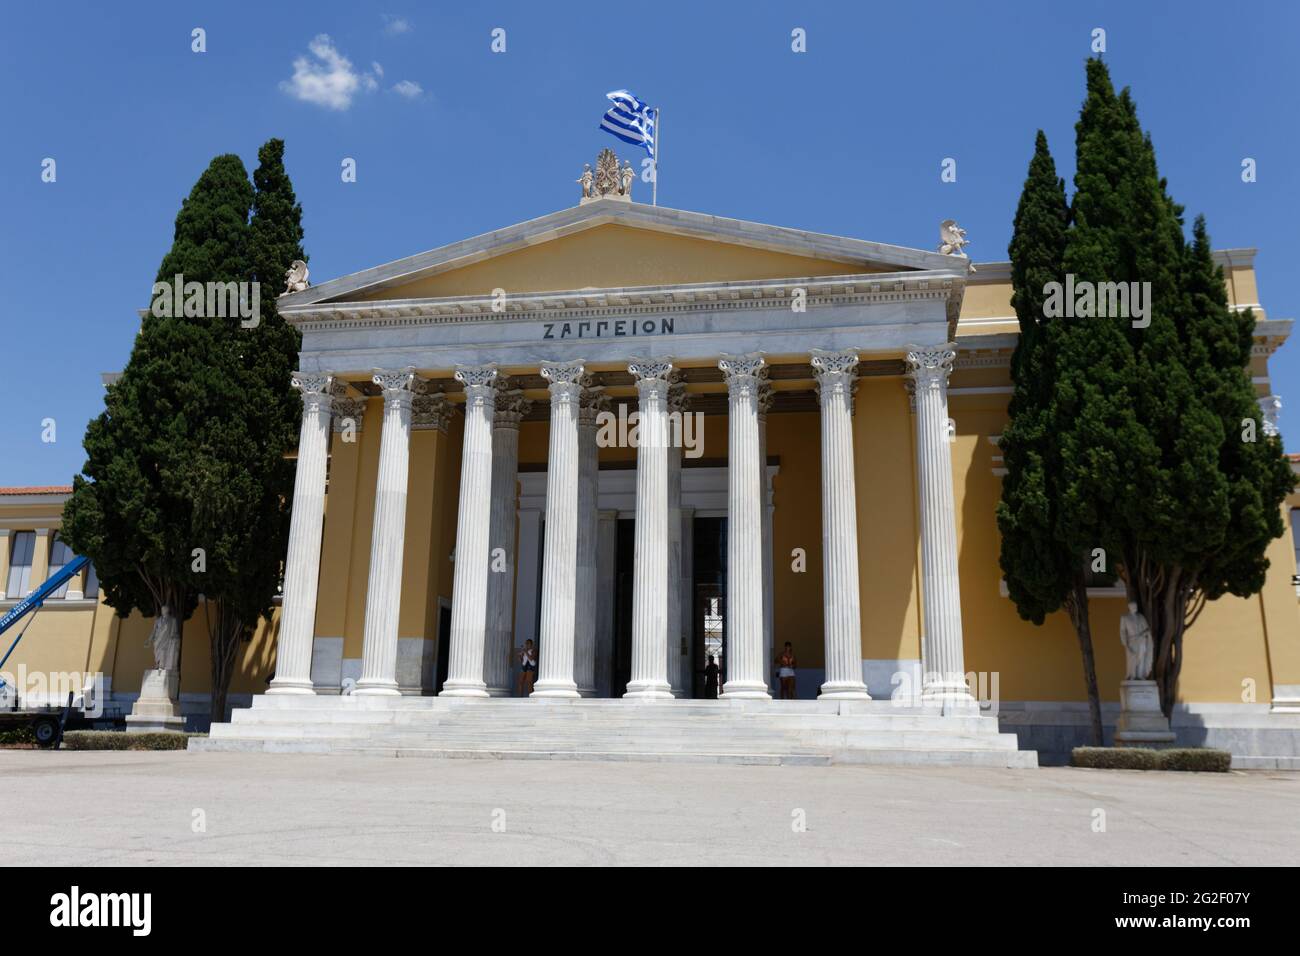 Zappeion - Athens Greece Stock Photo